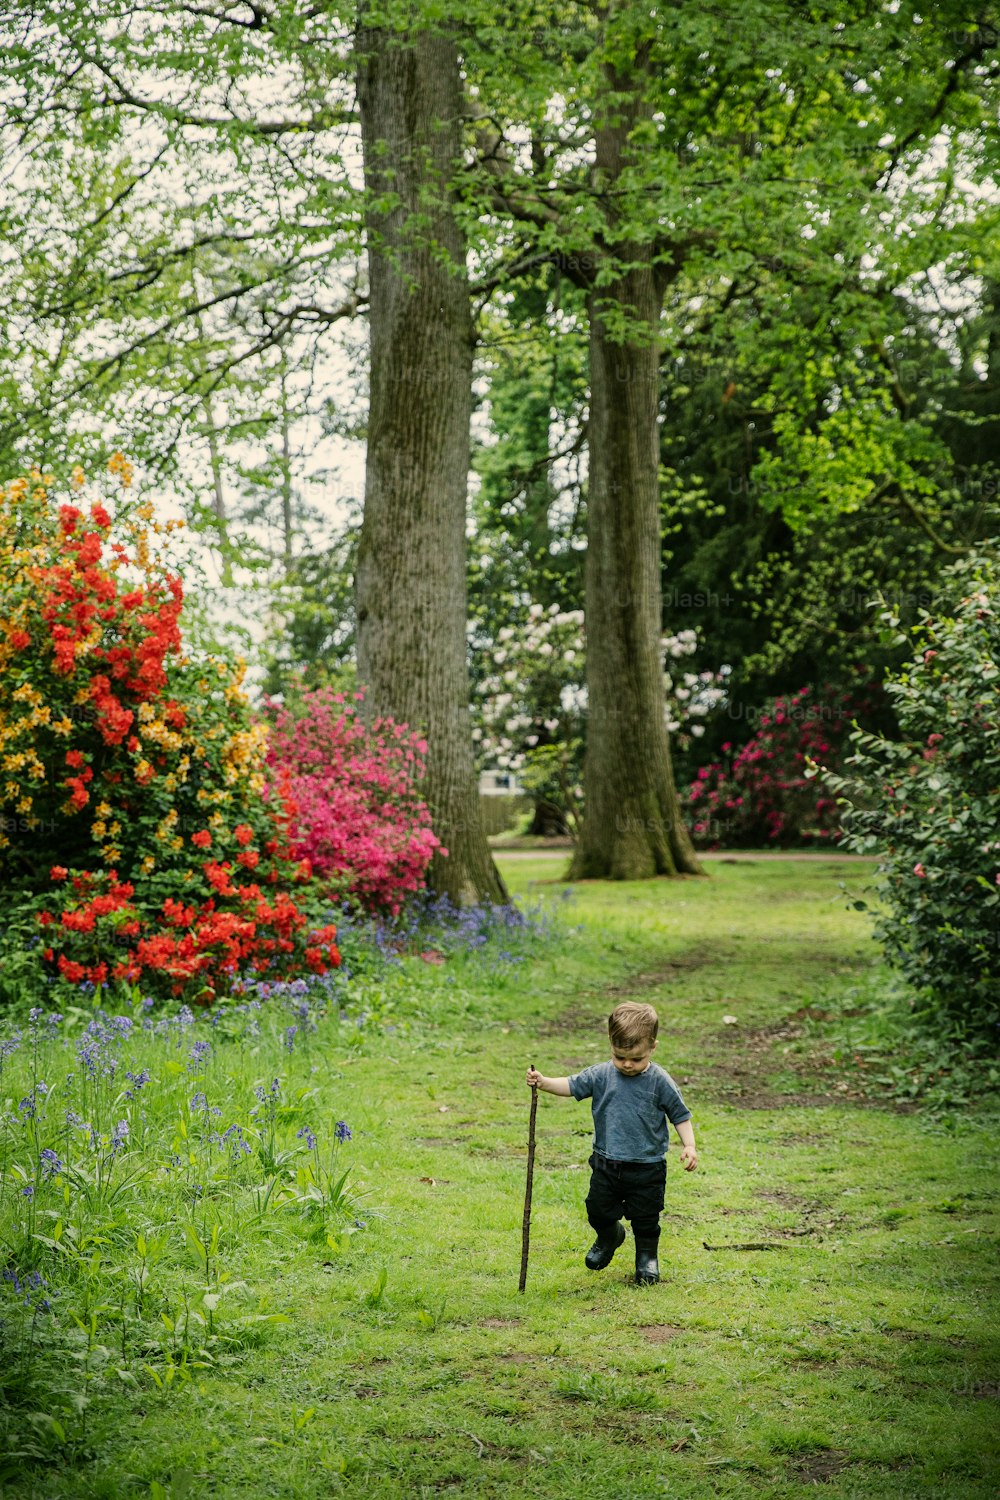 Un jeune garçon marchant dans un parc verdoyant